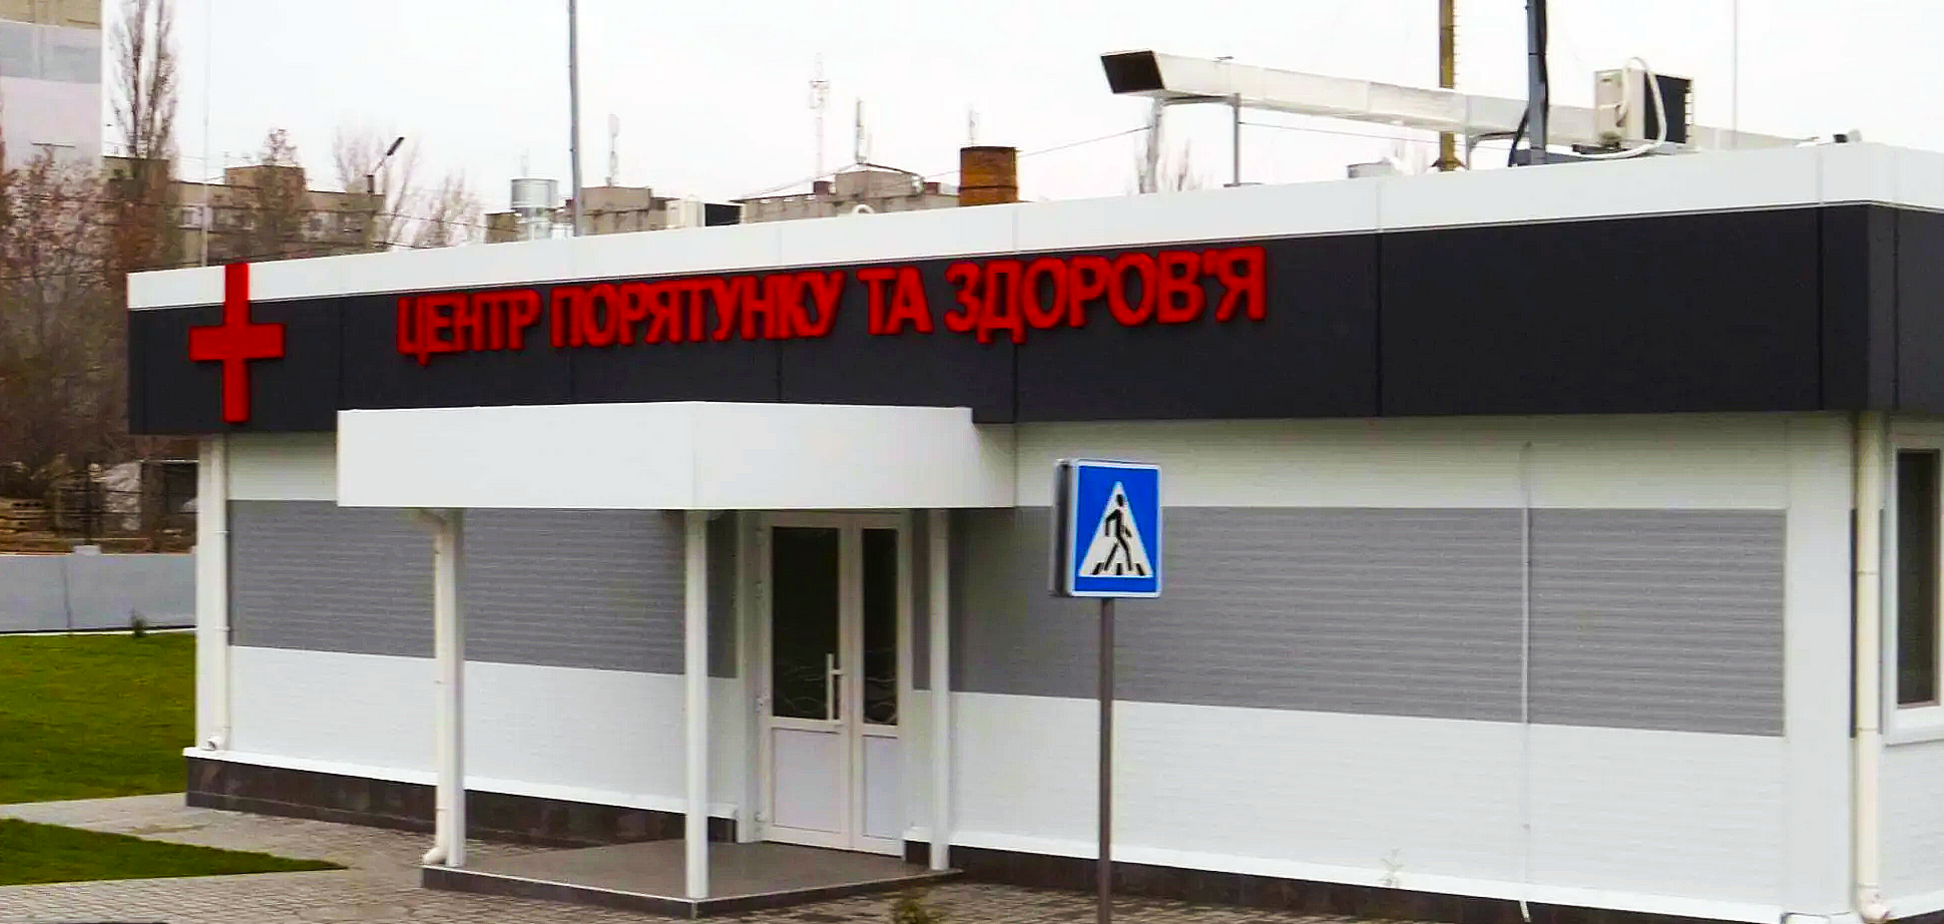 Миколаївський глиноземний завод виділив 6 млн грн на підтримку створеного ним антиковідного госпіталю